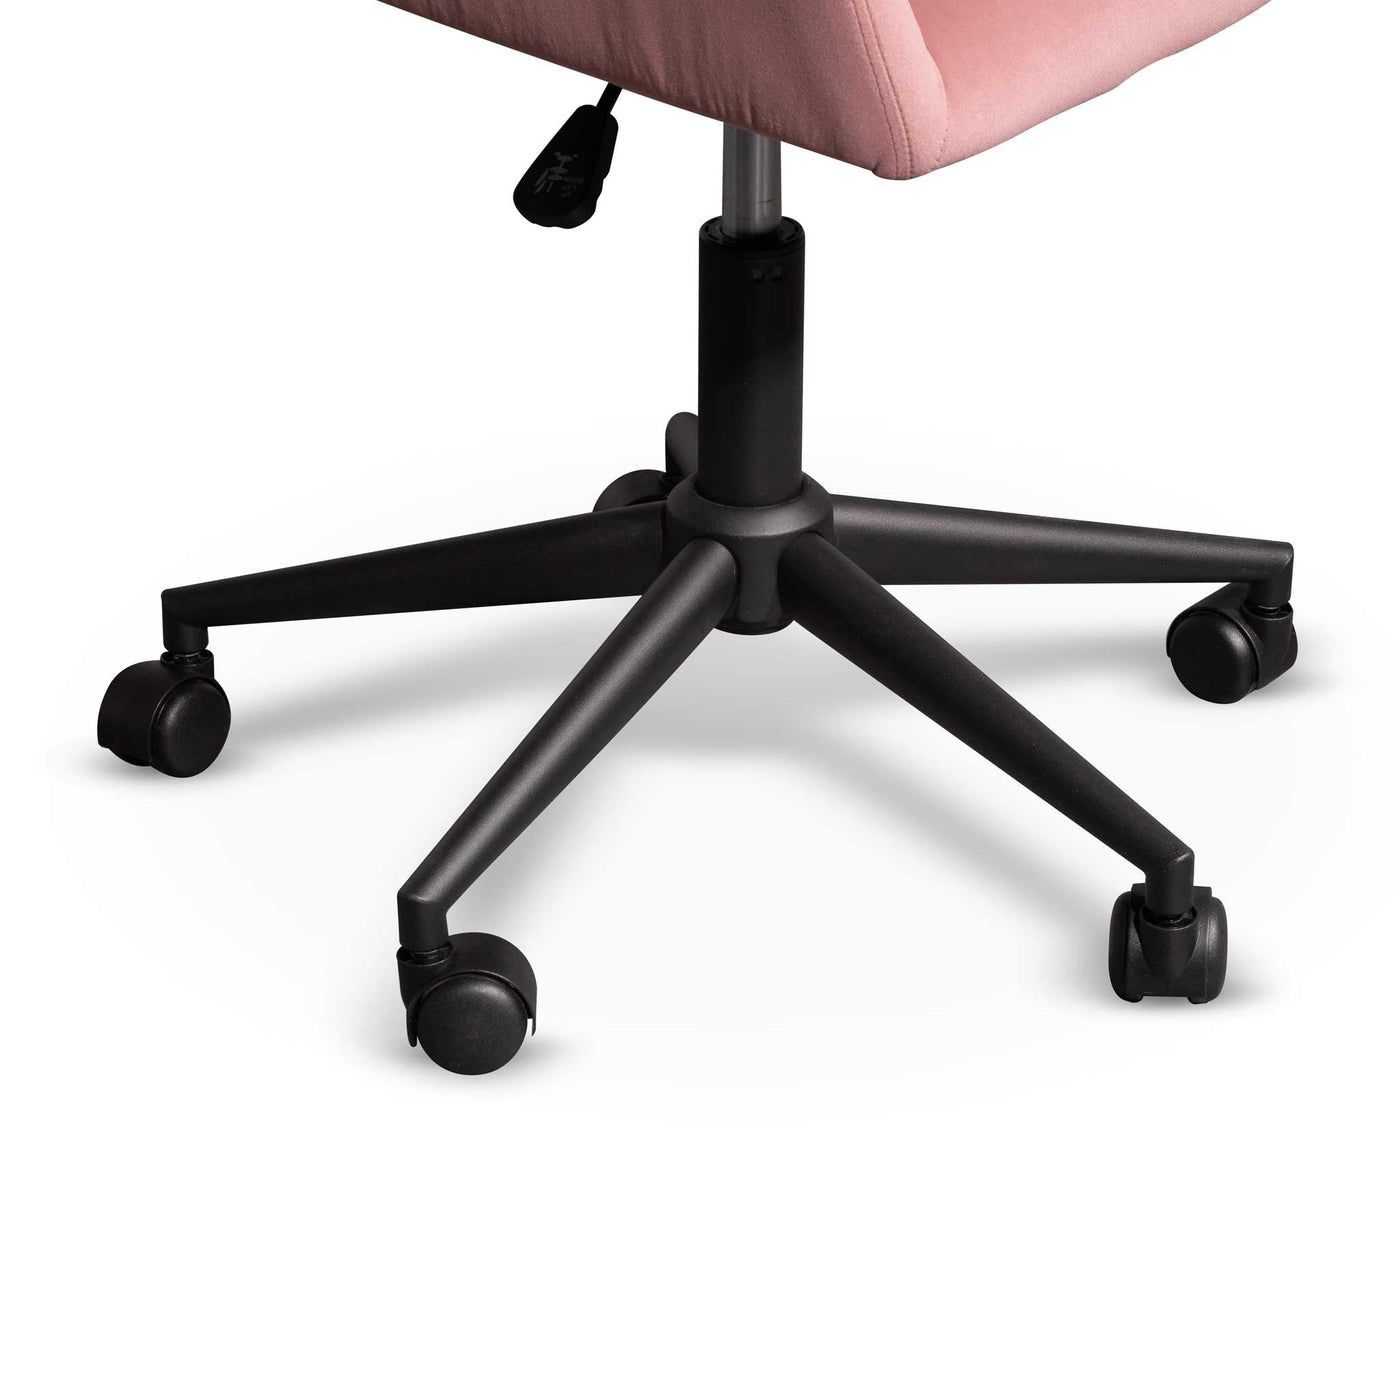 Blush Velvet Office Chair - Black Base